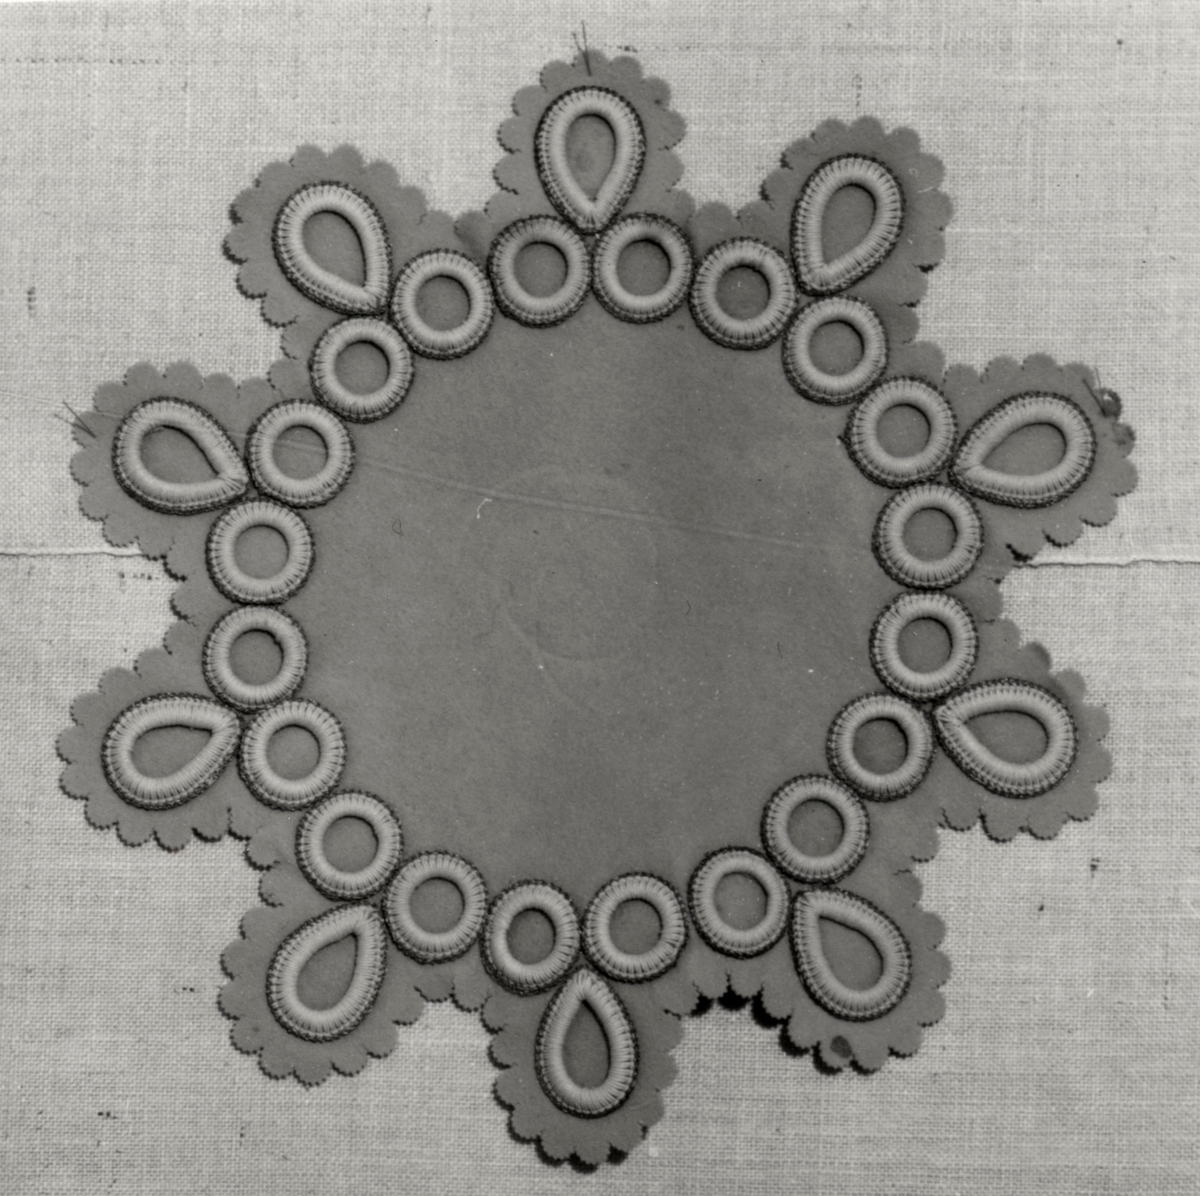 Duk, av ljust gråbrun filt, tio-uddig med runda och ovala snörmakerier med guldtrådskant, något defekt, malhål. Användningstid: 1880-1900